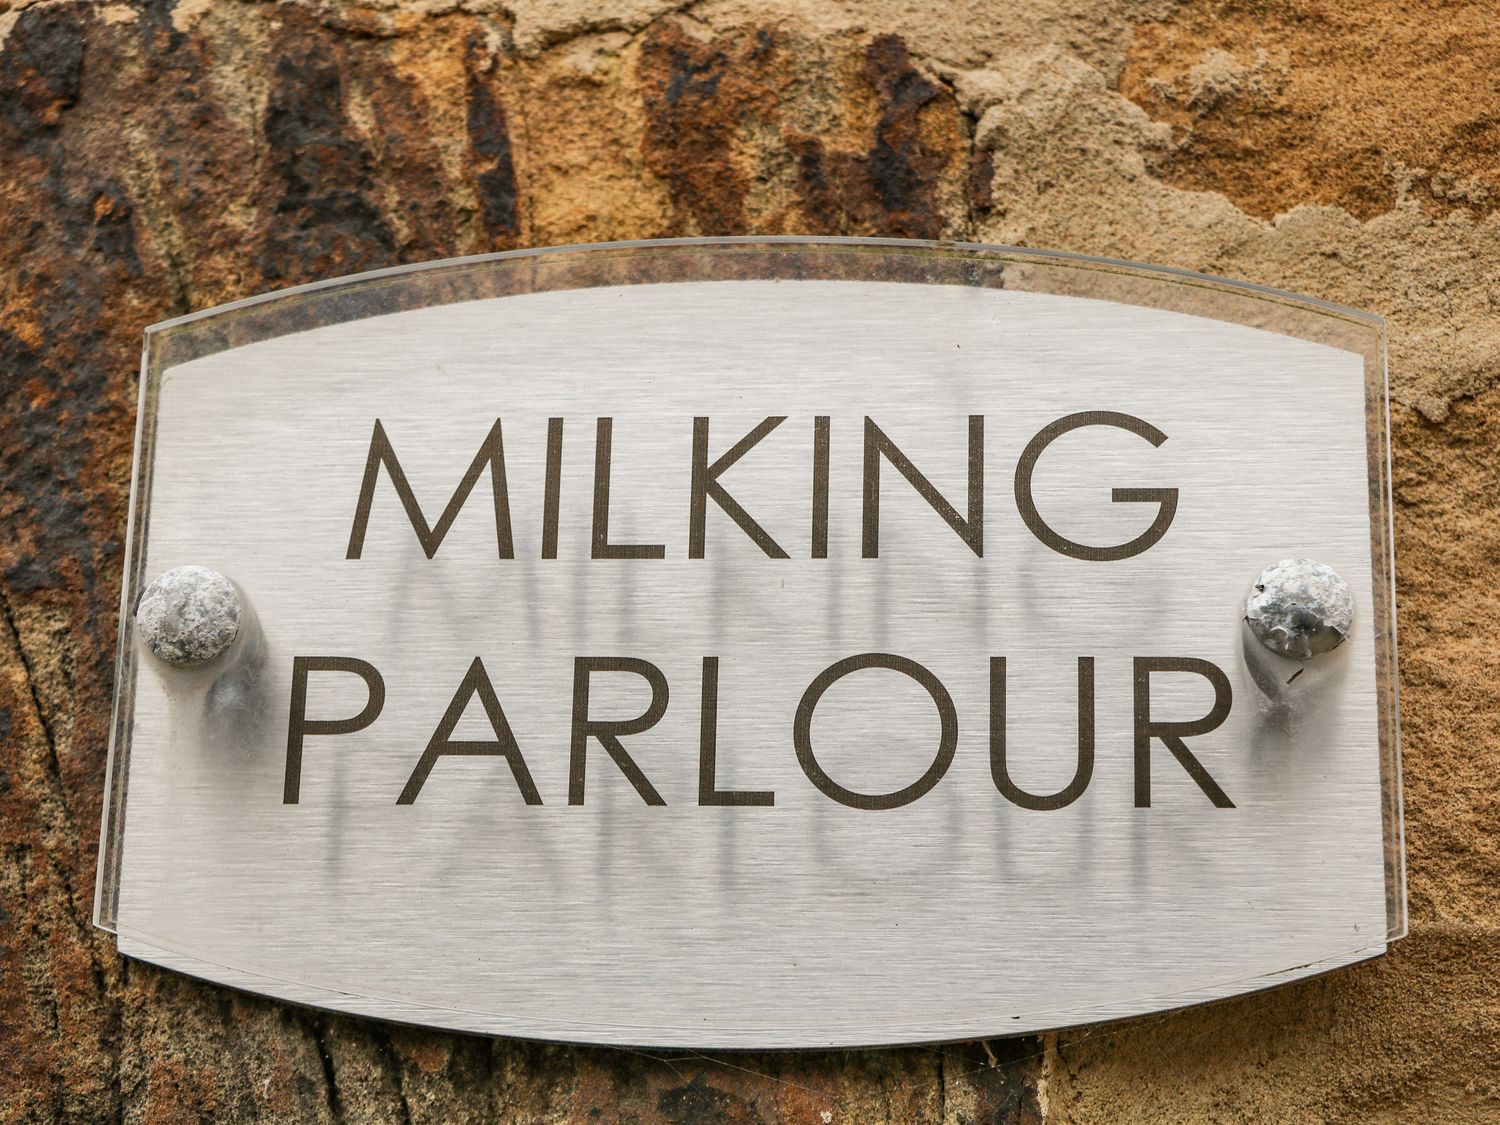 The Milking Parlour, Marsh Lane